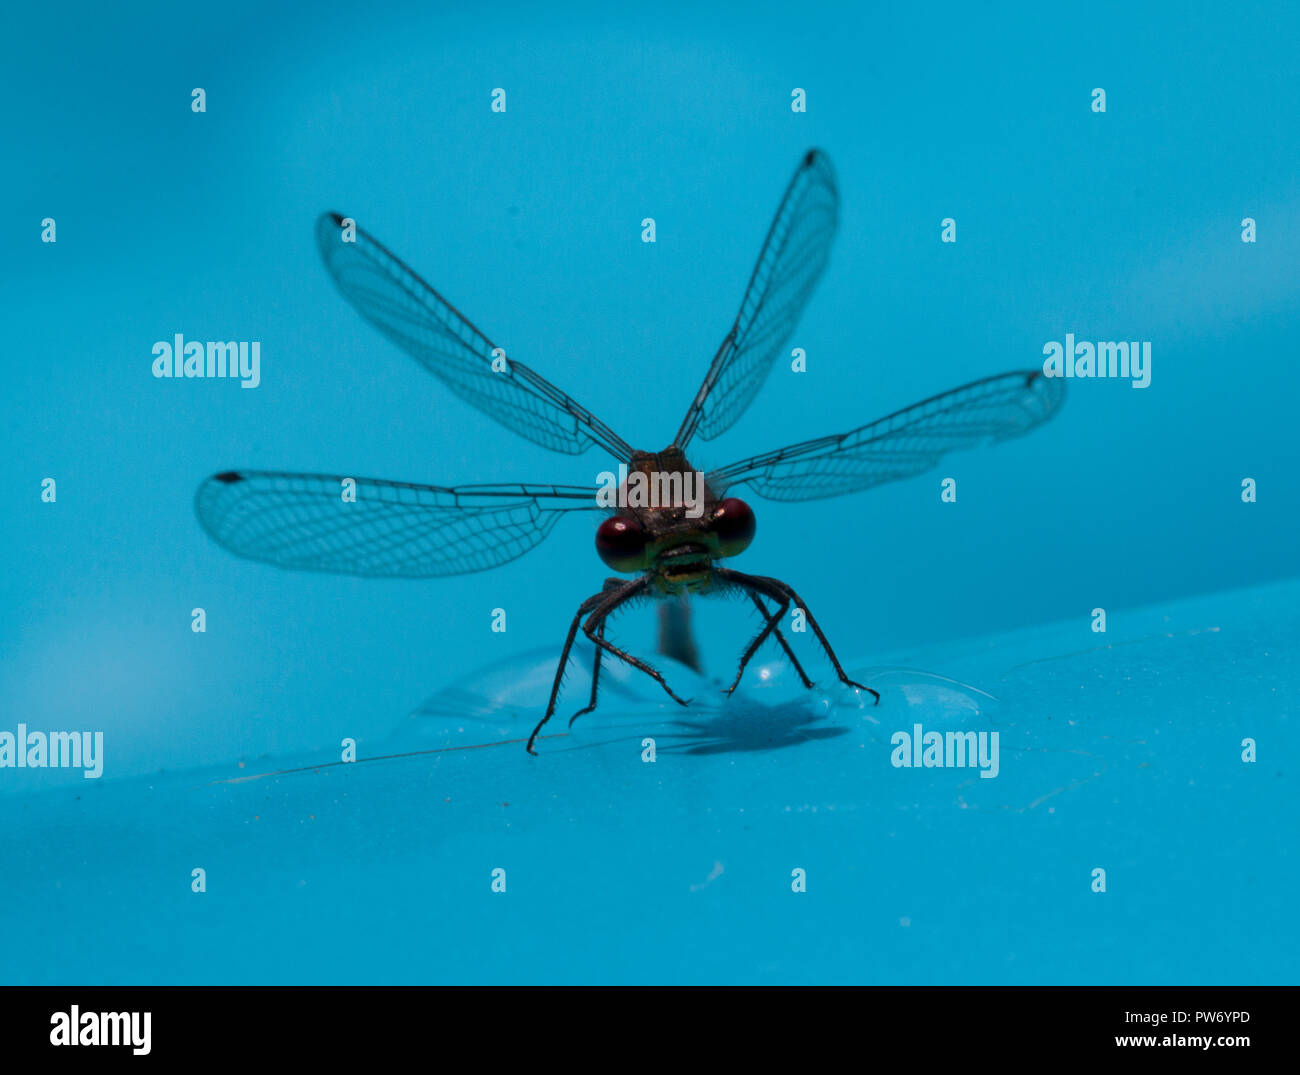 Cerca de una libélula en el borde de una piscina azul brillante Foto de stock